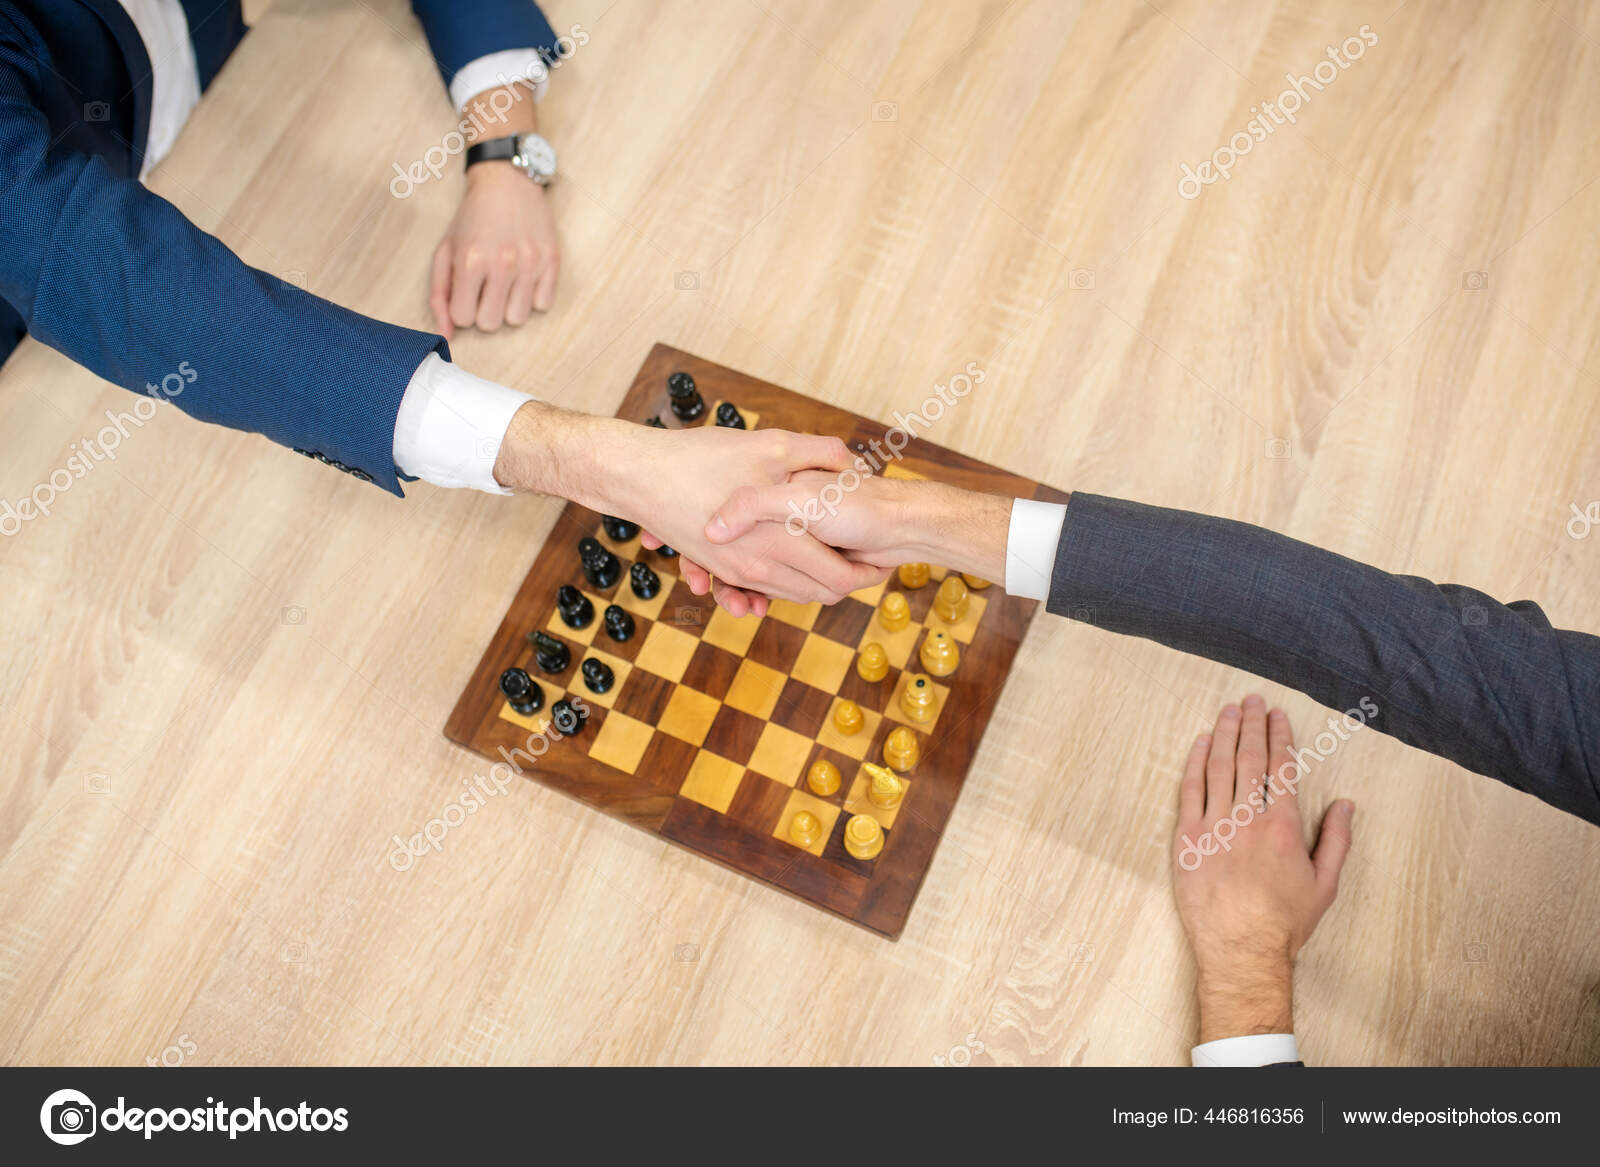 Mão faz uma jogada no jogo de xadrez no tabuleiro de vídeo no chat online.